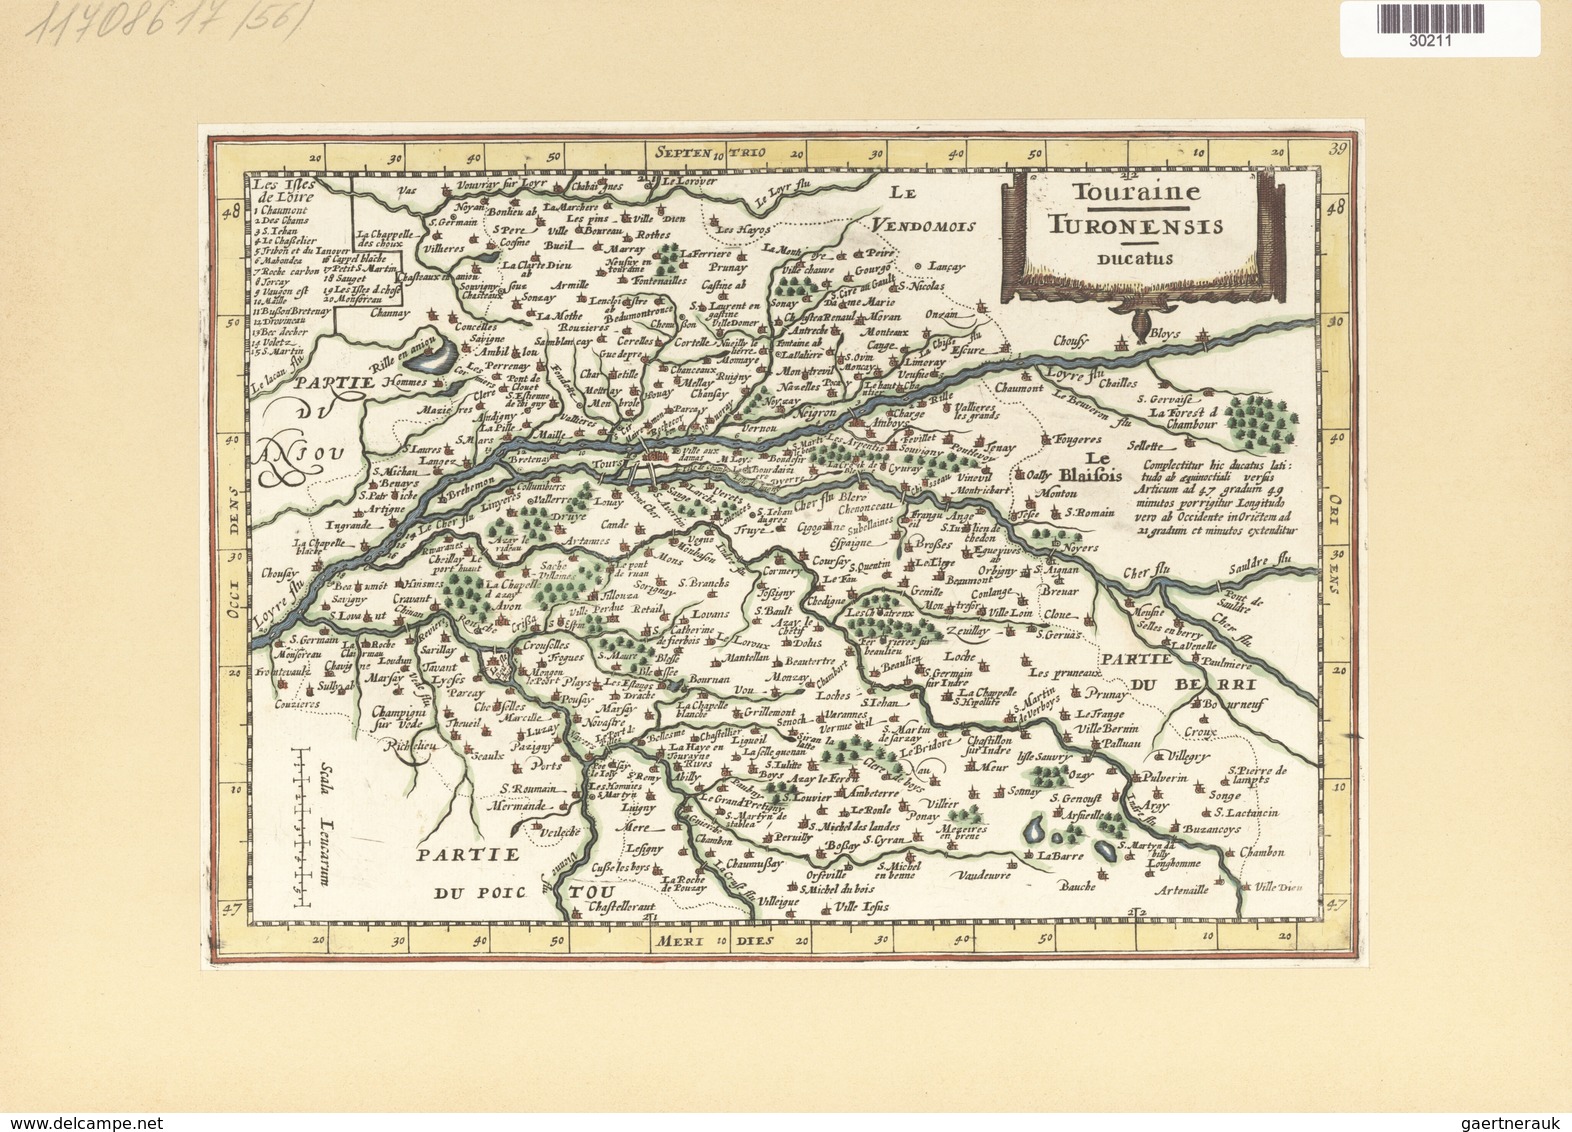 Landkarten Und Stiche: 1734. Touraine / Turonensis Ducatus. Map Of The Duchy Of Tours Region Of Fran - Geografía